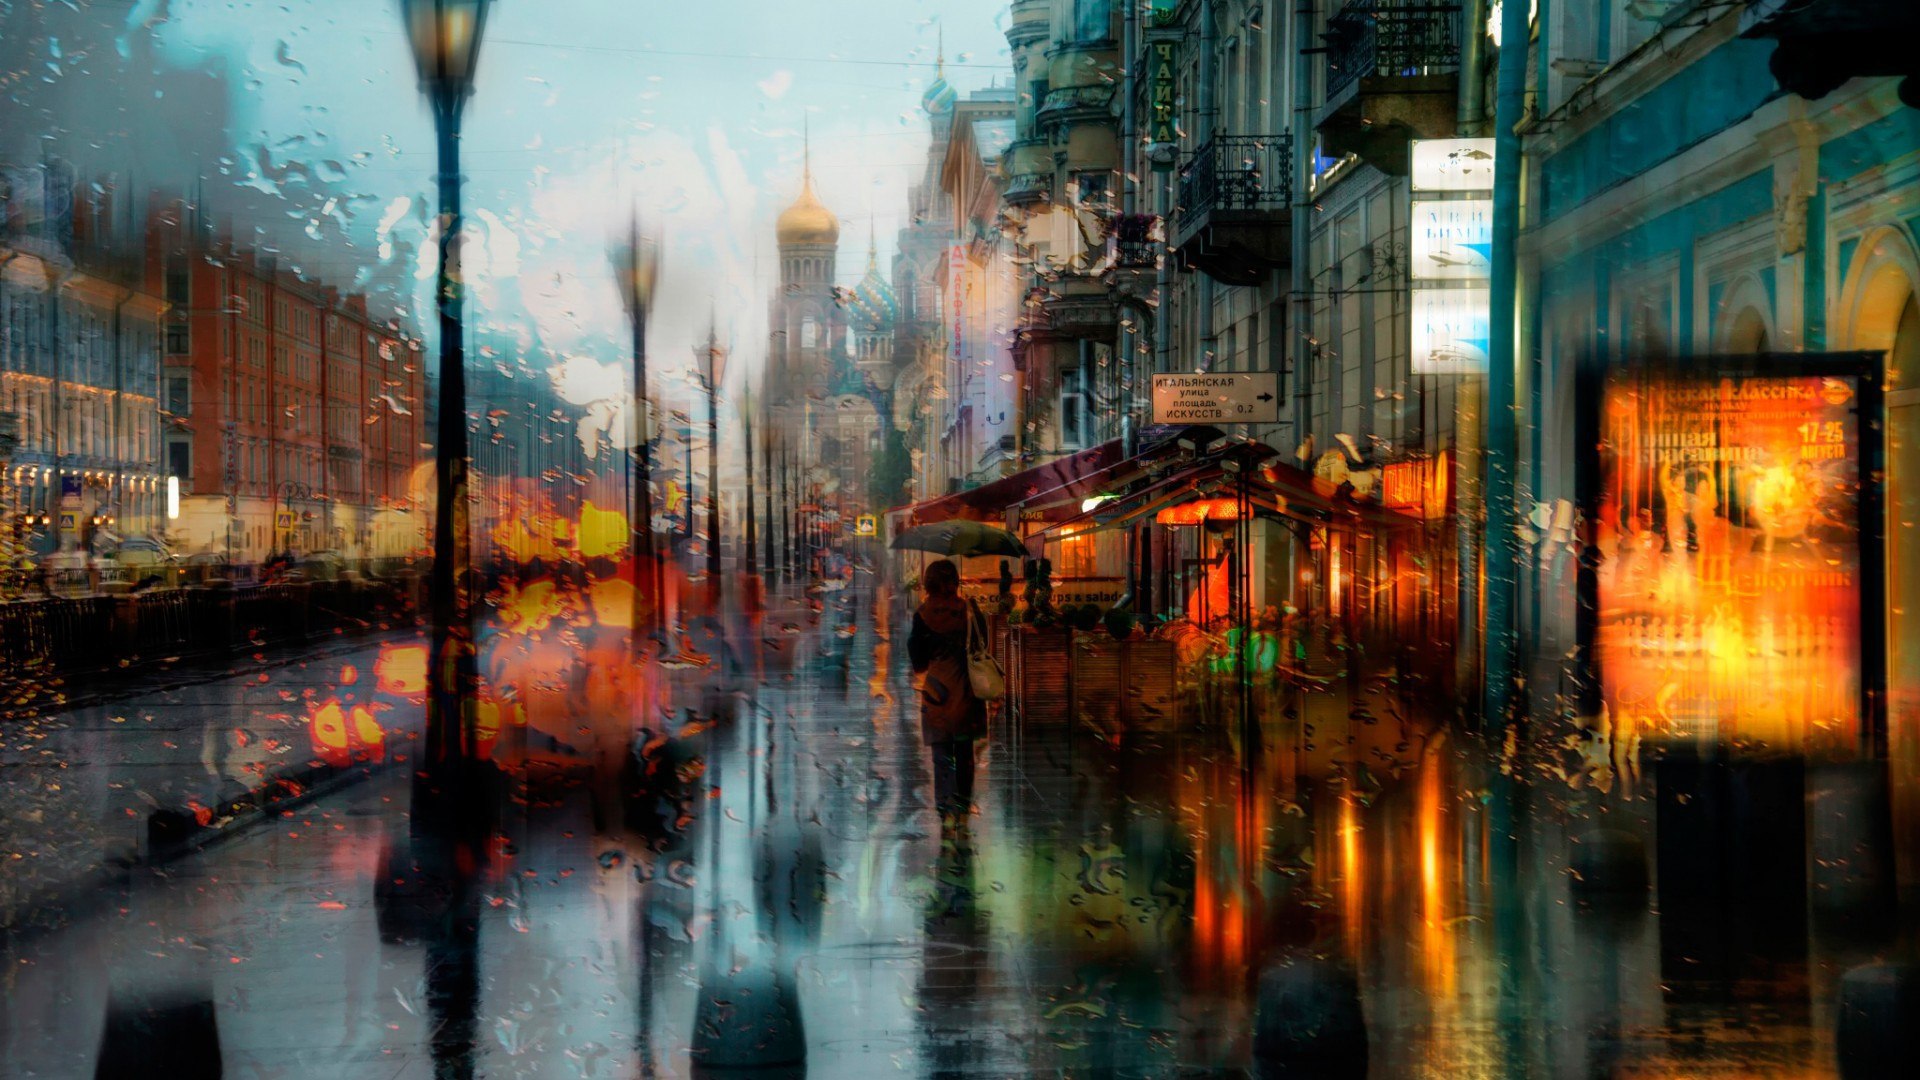 Rain In St Petersburg Wallpaper And Image